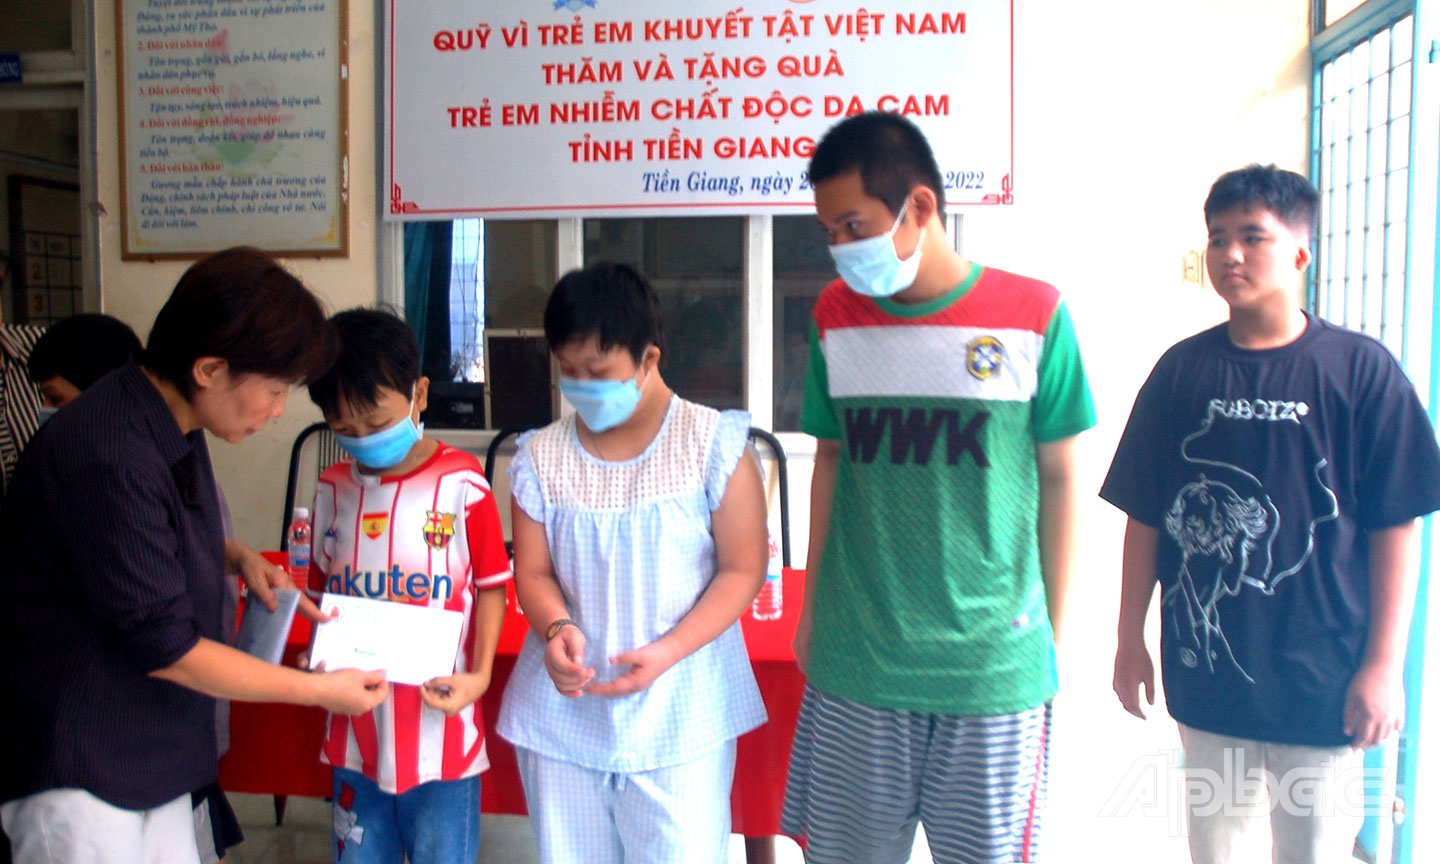 Bà Phạm Thị Chính, Giám đốc Quỹ Vì trẻ em khuyết tật Việt Nam  thăm hỏi, tặng quà cho trẻ em bị nhiễm chất độc da cam ở Tiền Giang.